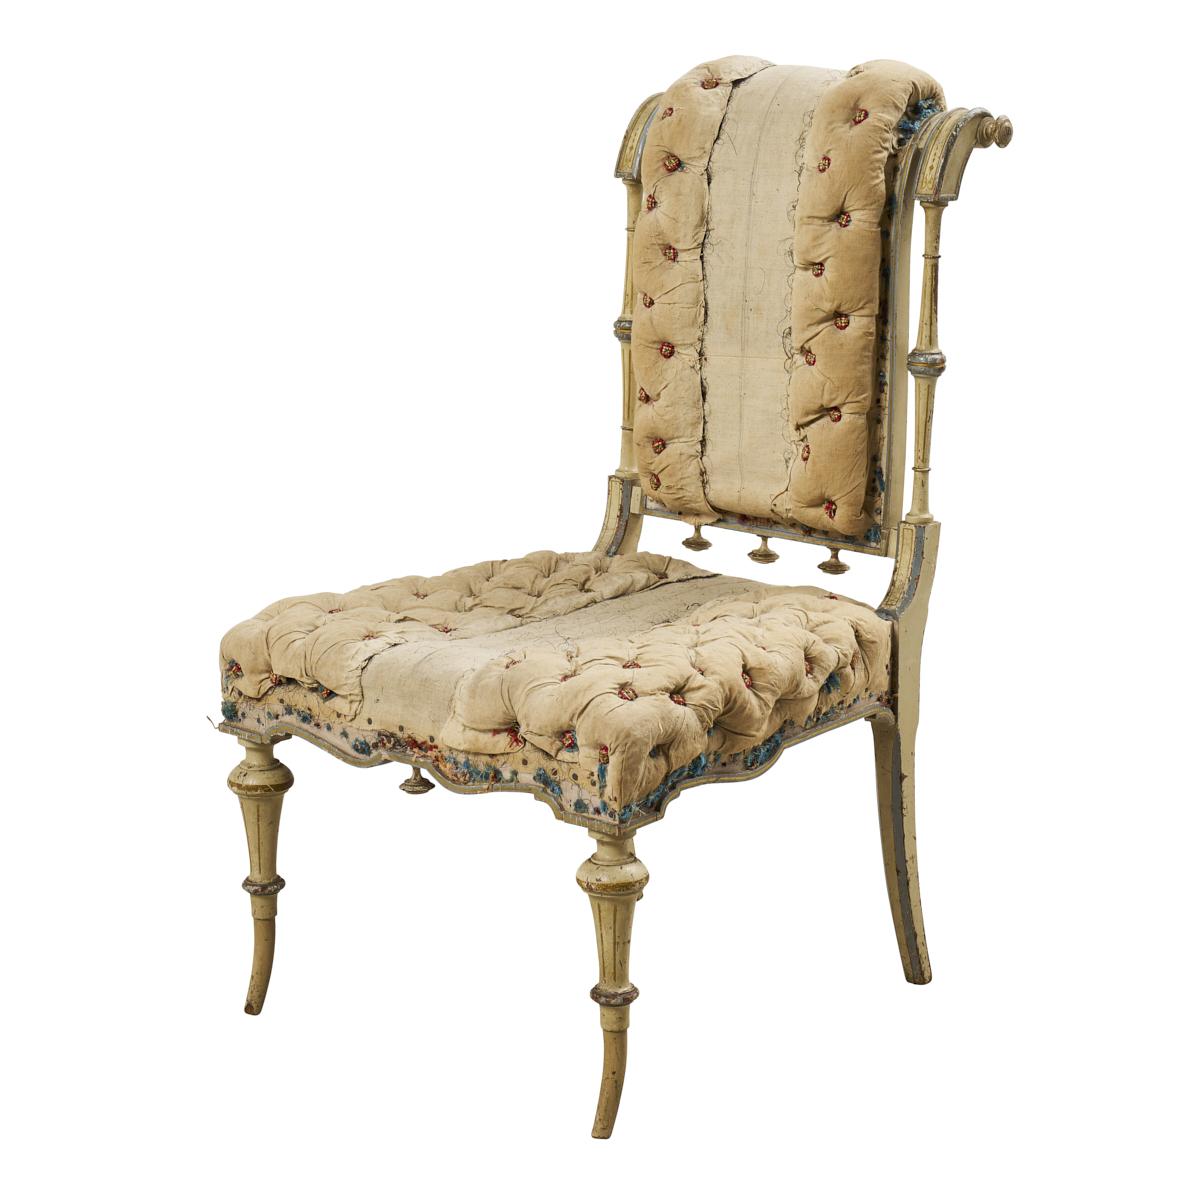 Trésor rare découvert en France, cette chaise à pantoufles du XVIIIe siècle, avec son cadre sculpté fantaisiste et sa tapisserie à boutons, est non seulement une magnifique antiquité, mais aussi un fabuleux sujet de conversation.